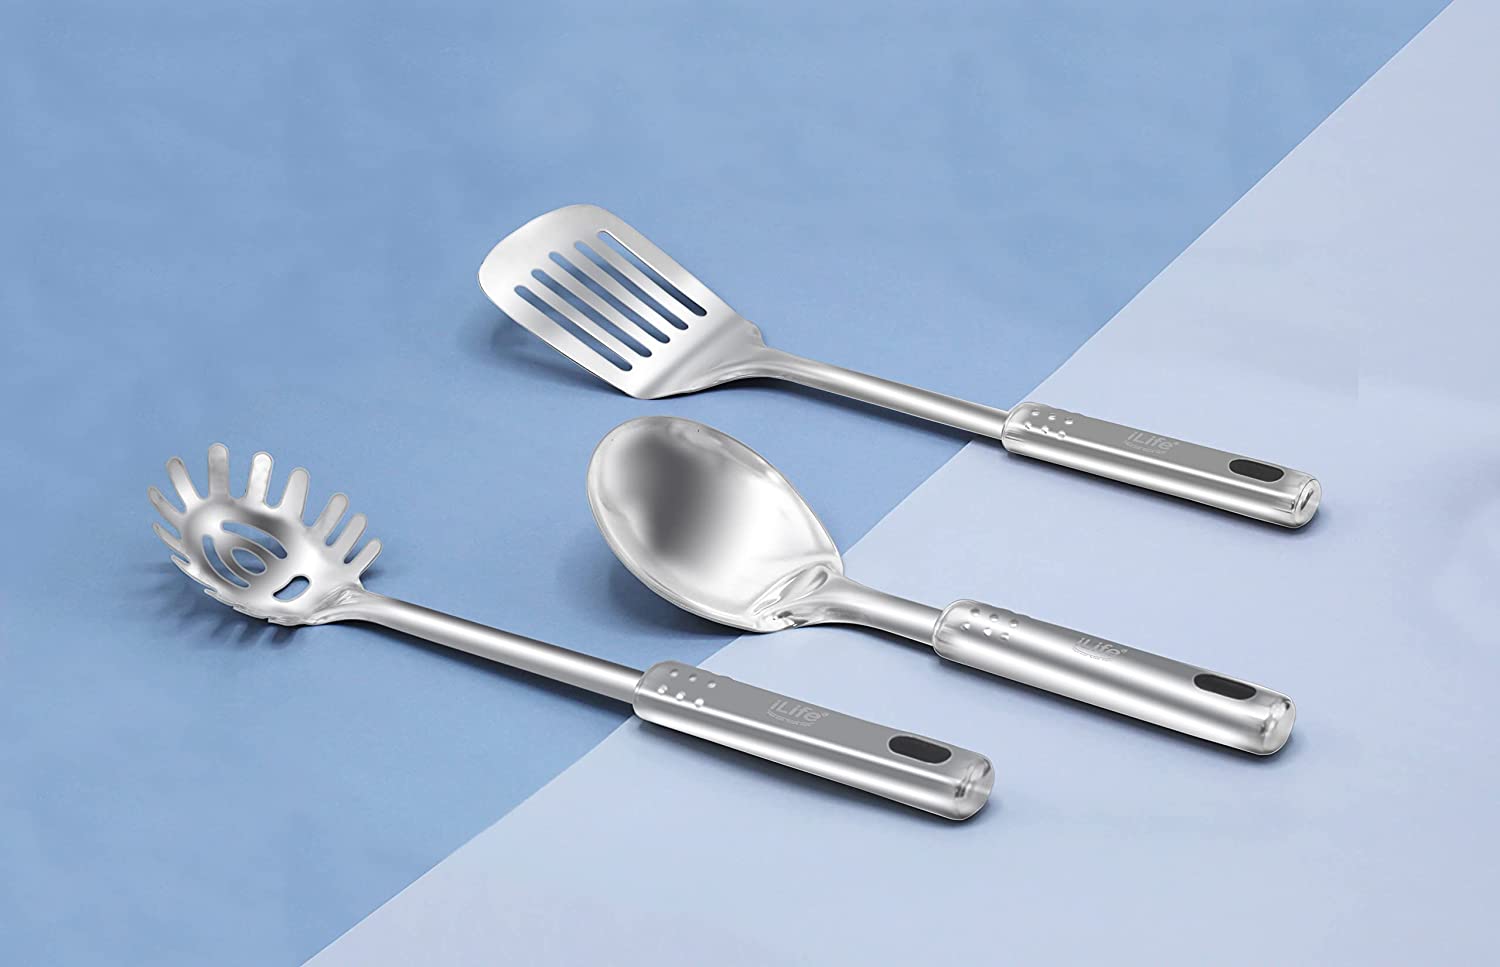  Cooking  Set ; Stainless steel set; utensil set